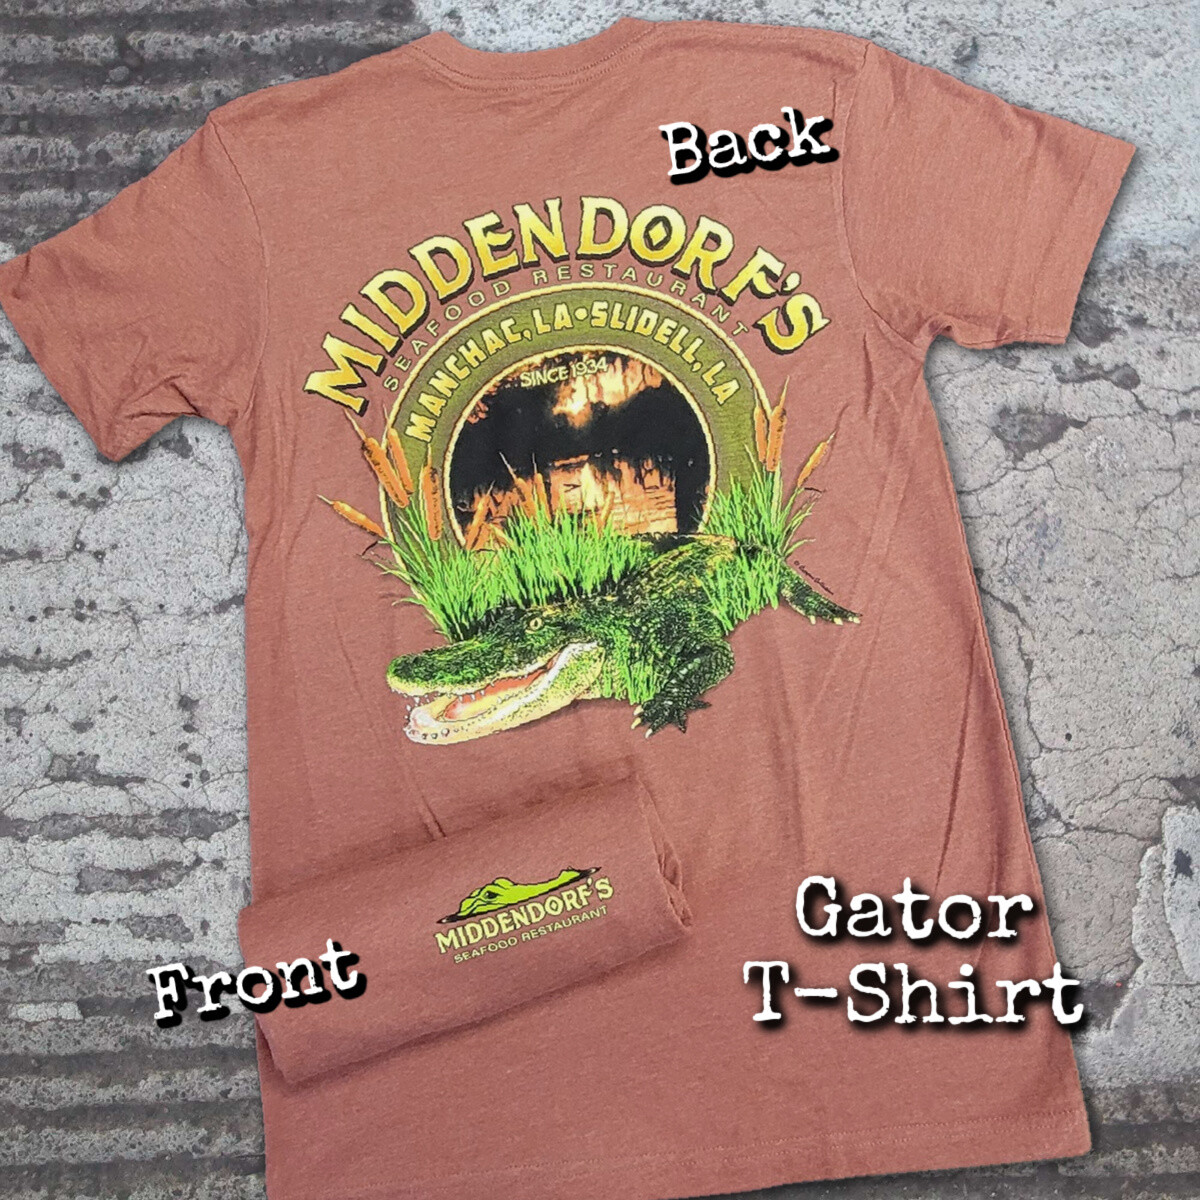 Gator T-shirt